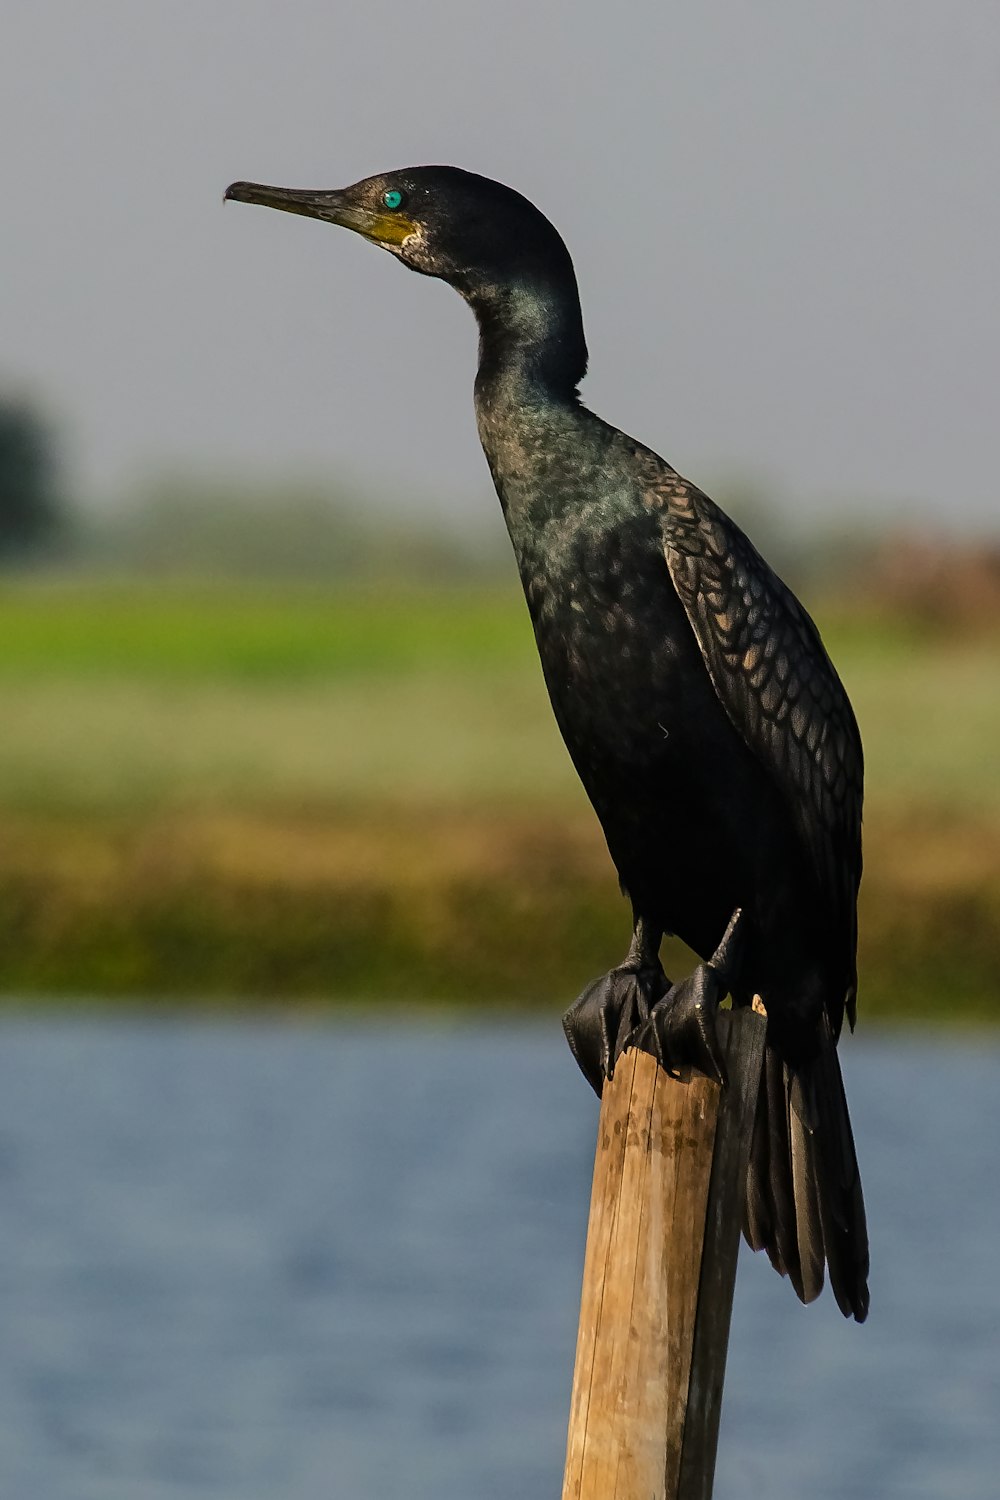 black bird on brown wooden stick